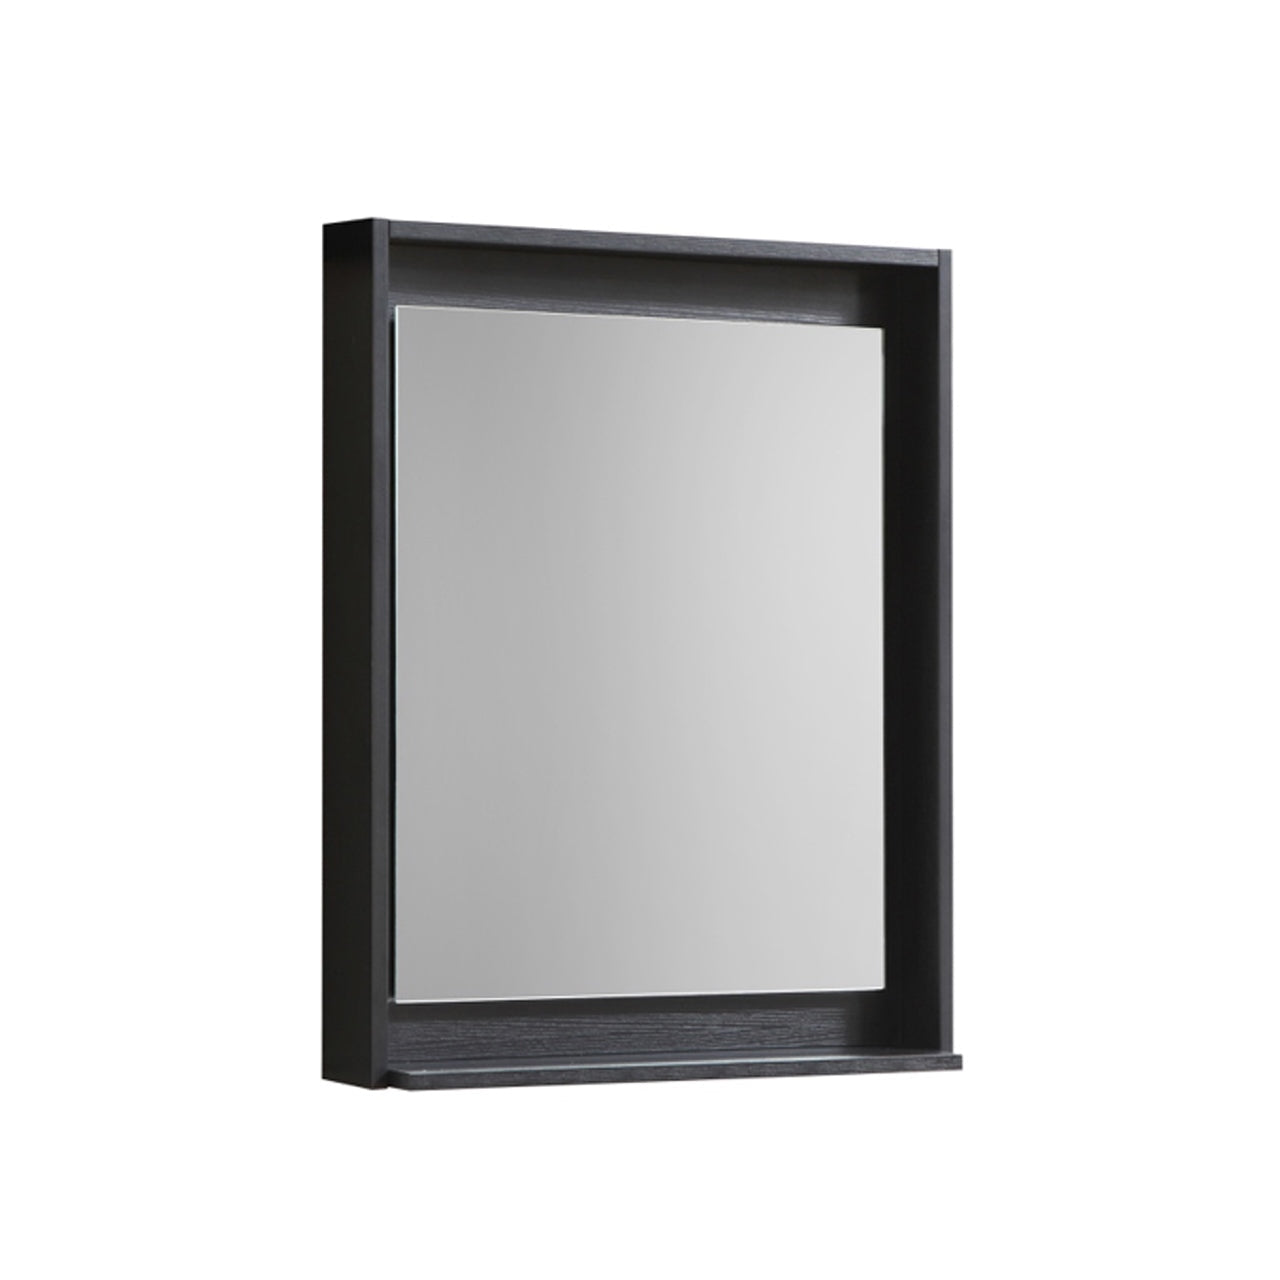 Bosco 24" Framed Mirror With Shelve - Bhdepot 